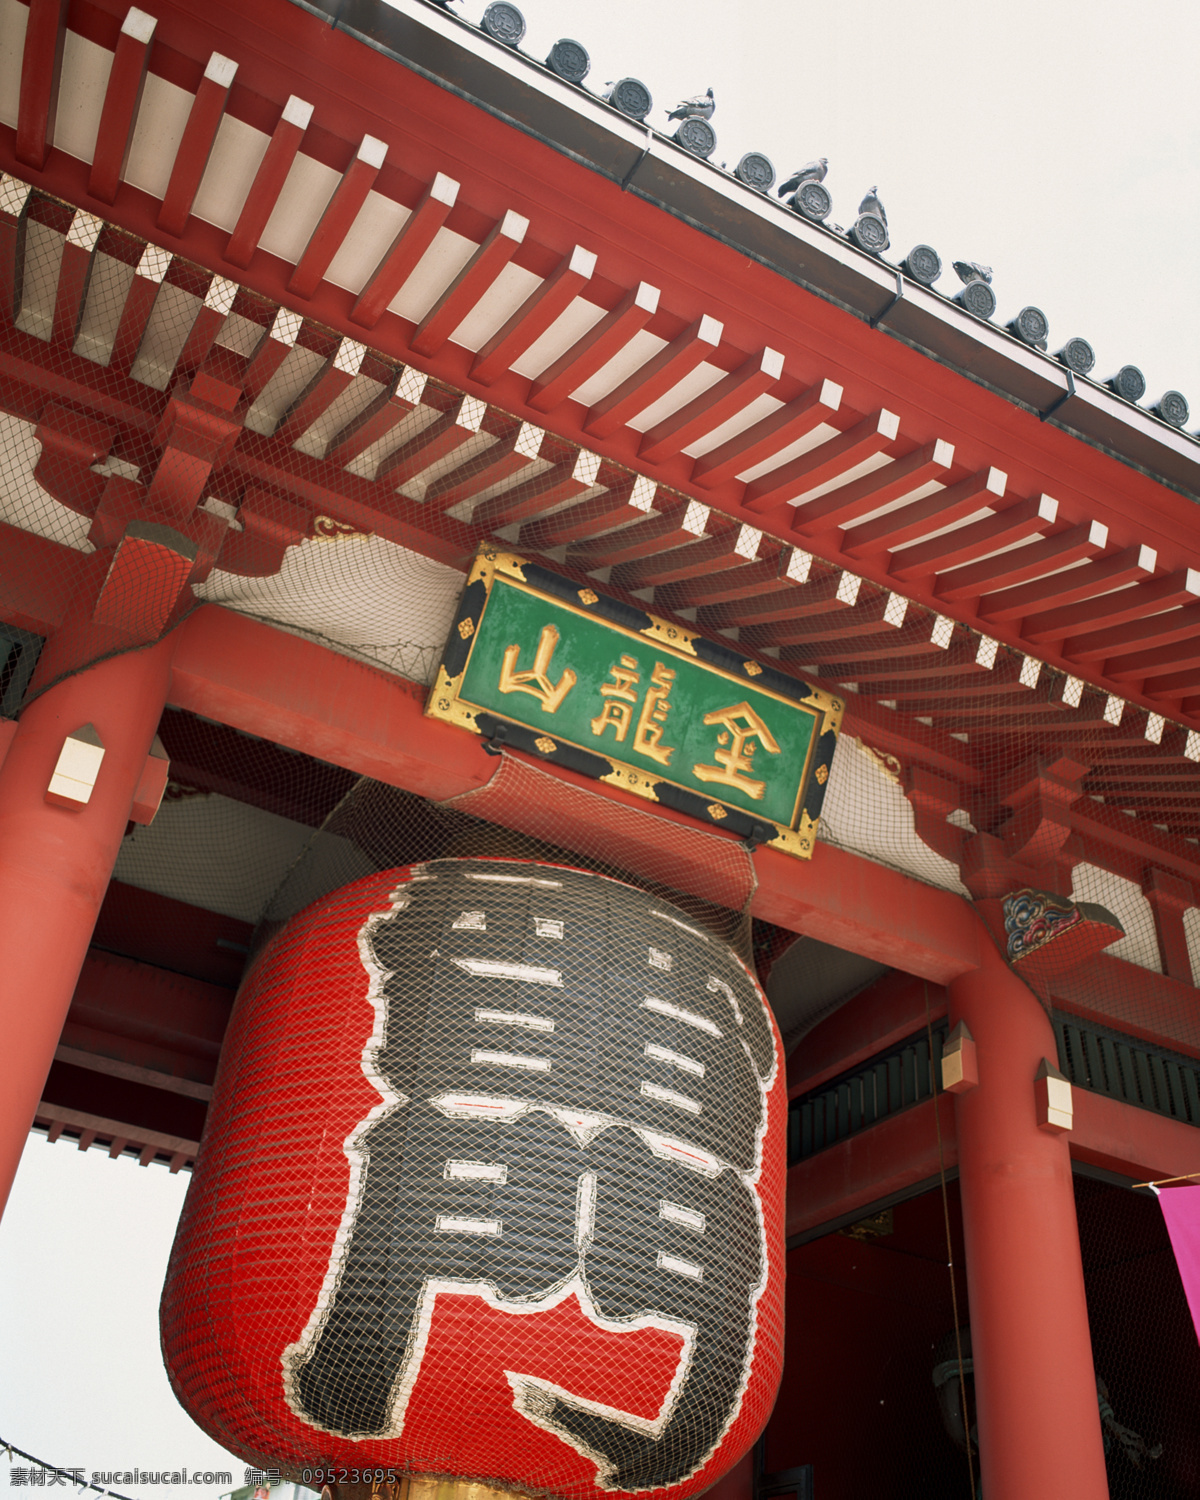 日式 风格 建筑 大门 灯笼 风格建筑 日本 日式建筑 特色建筑 日本建筑摄影 日式大门摄影 日式灯笼